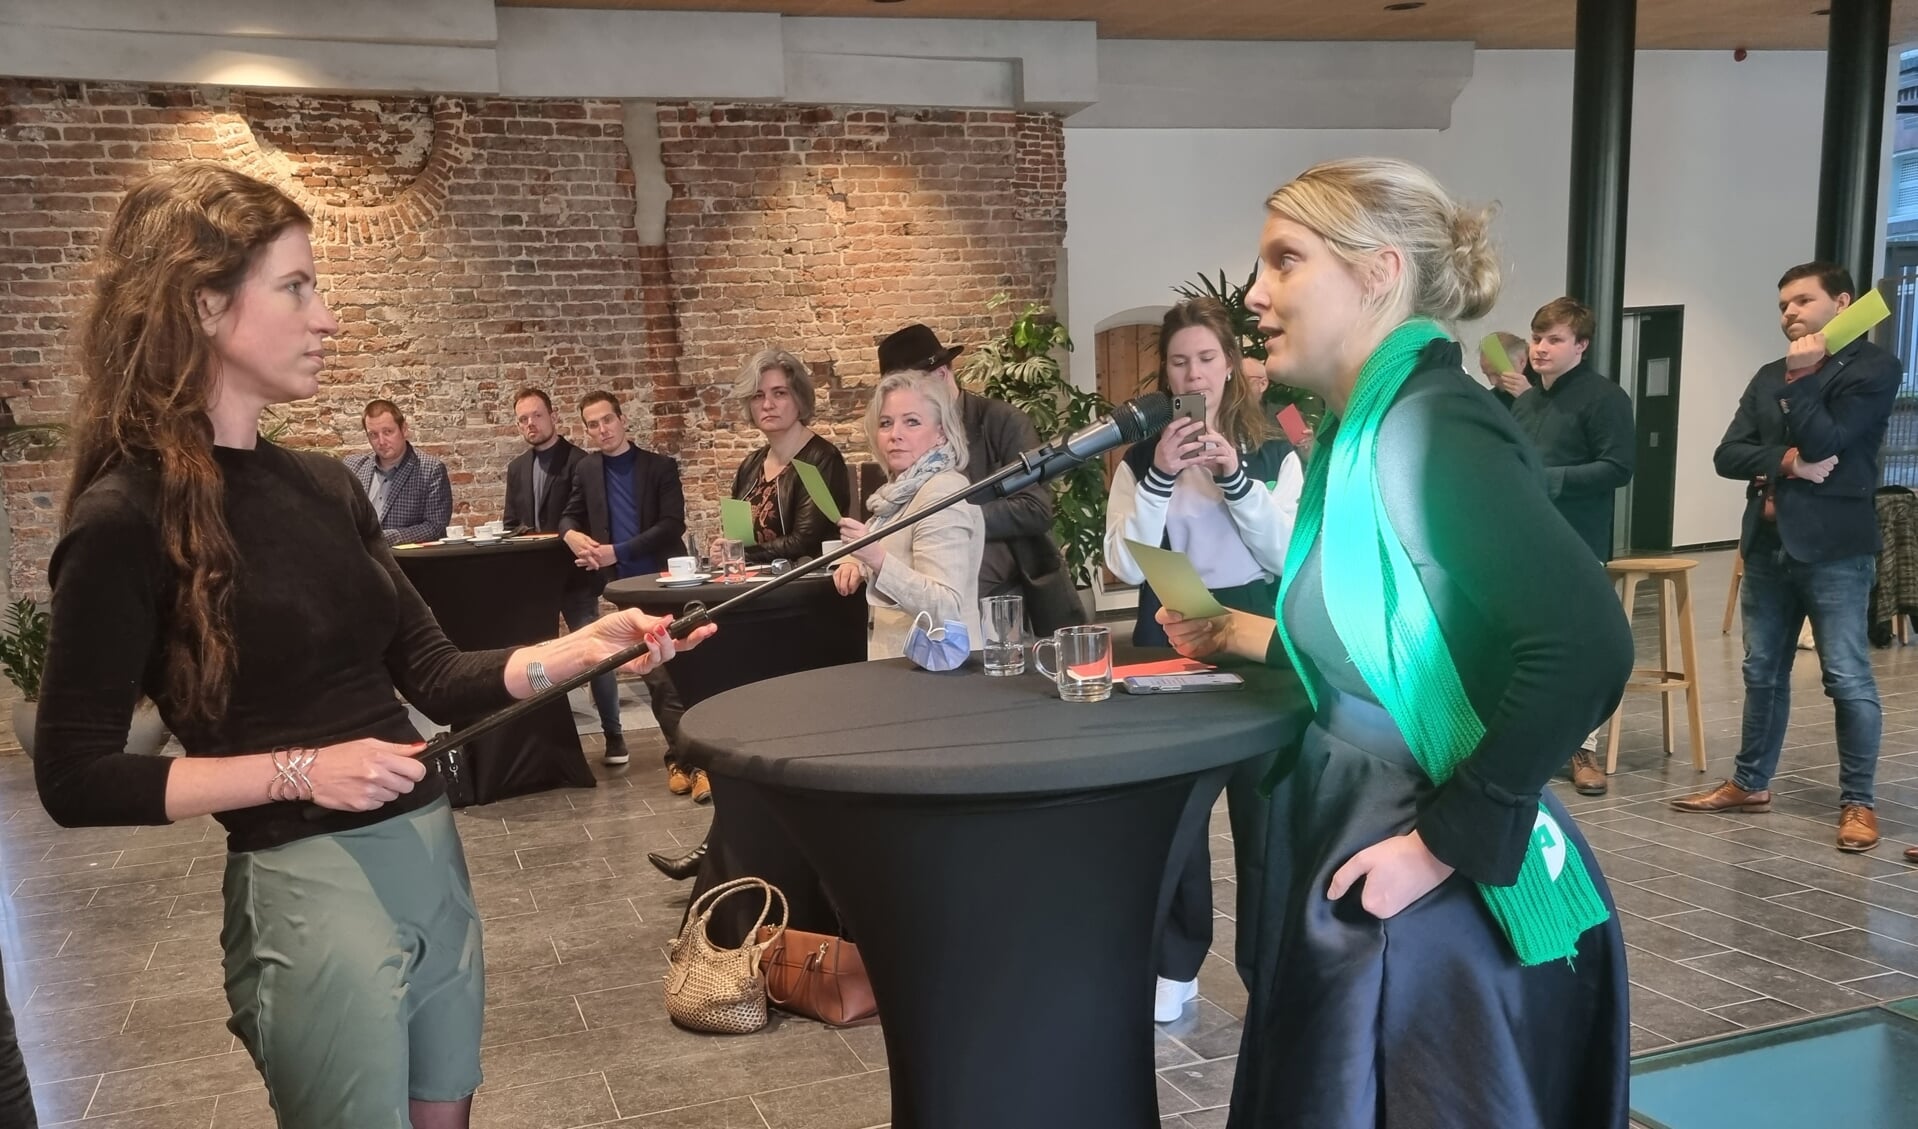 De StemWijzer voor de gemeenteraadsverkiezingen in Den Bosch werd afgelopen vrijdag gepresenteerd op het Stadhuis. Op de foto Marjolein Yildiz (afdeling communicatie gemeente 's-Hertogenbosch) in gesprek met Mariannne van der Sloot (lijsttrekker CDA).